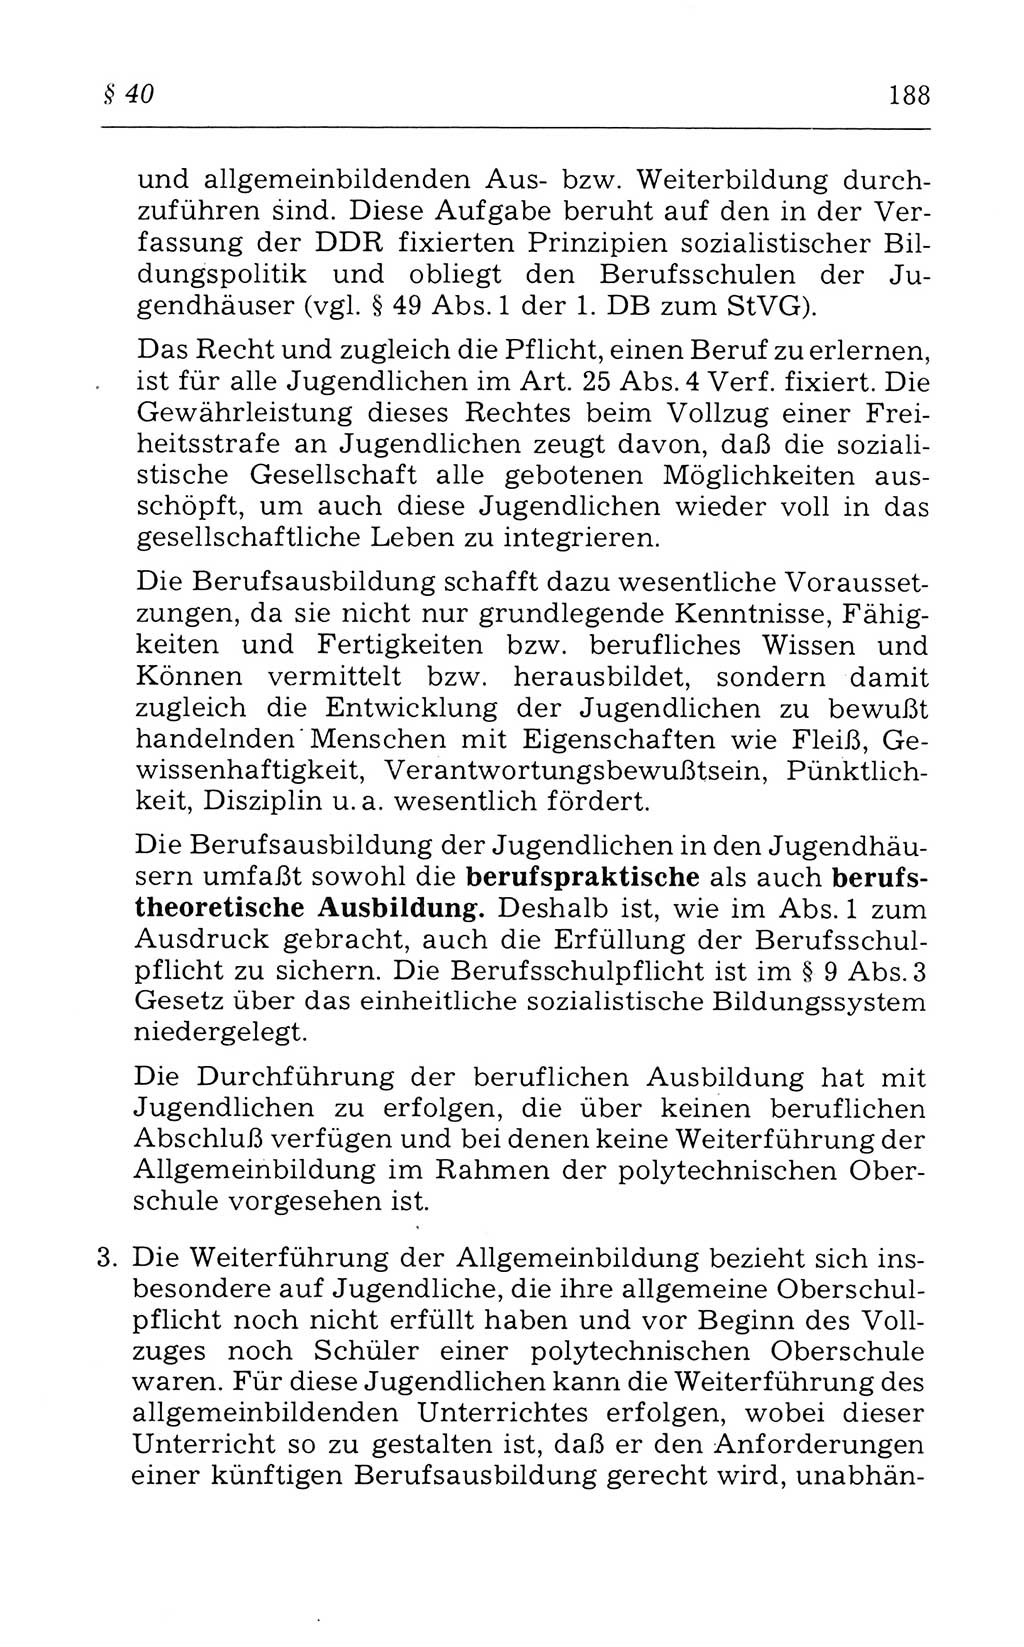 Kommentar zum Strafvollzugsgesetz [(StVG) Deutsche Demokratische Republik (DDR)] 1980, Seite 188 (Komm. StVG DDR 1980, S. 188)